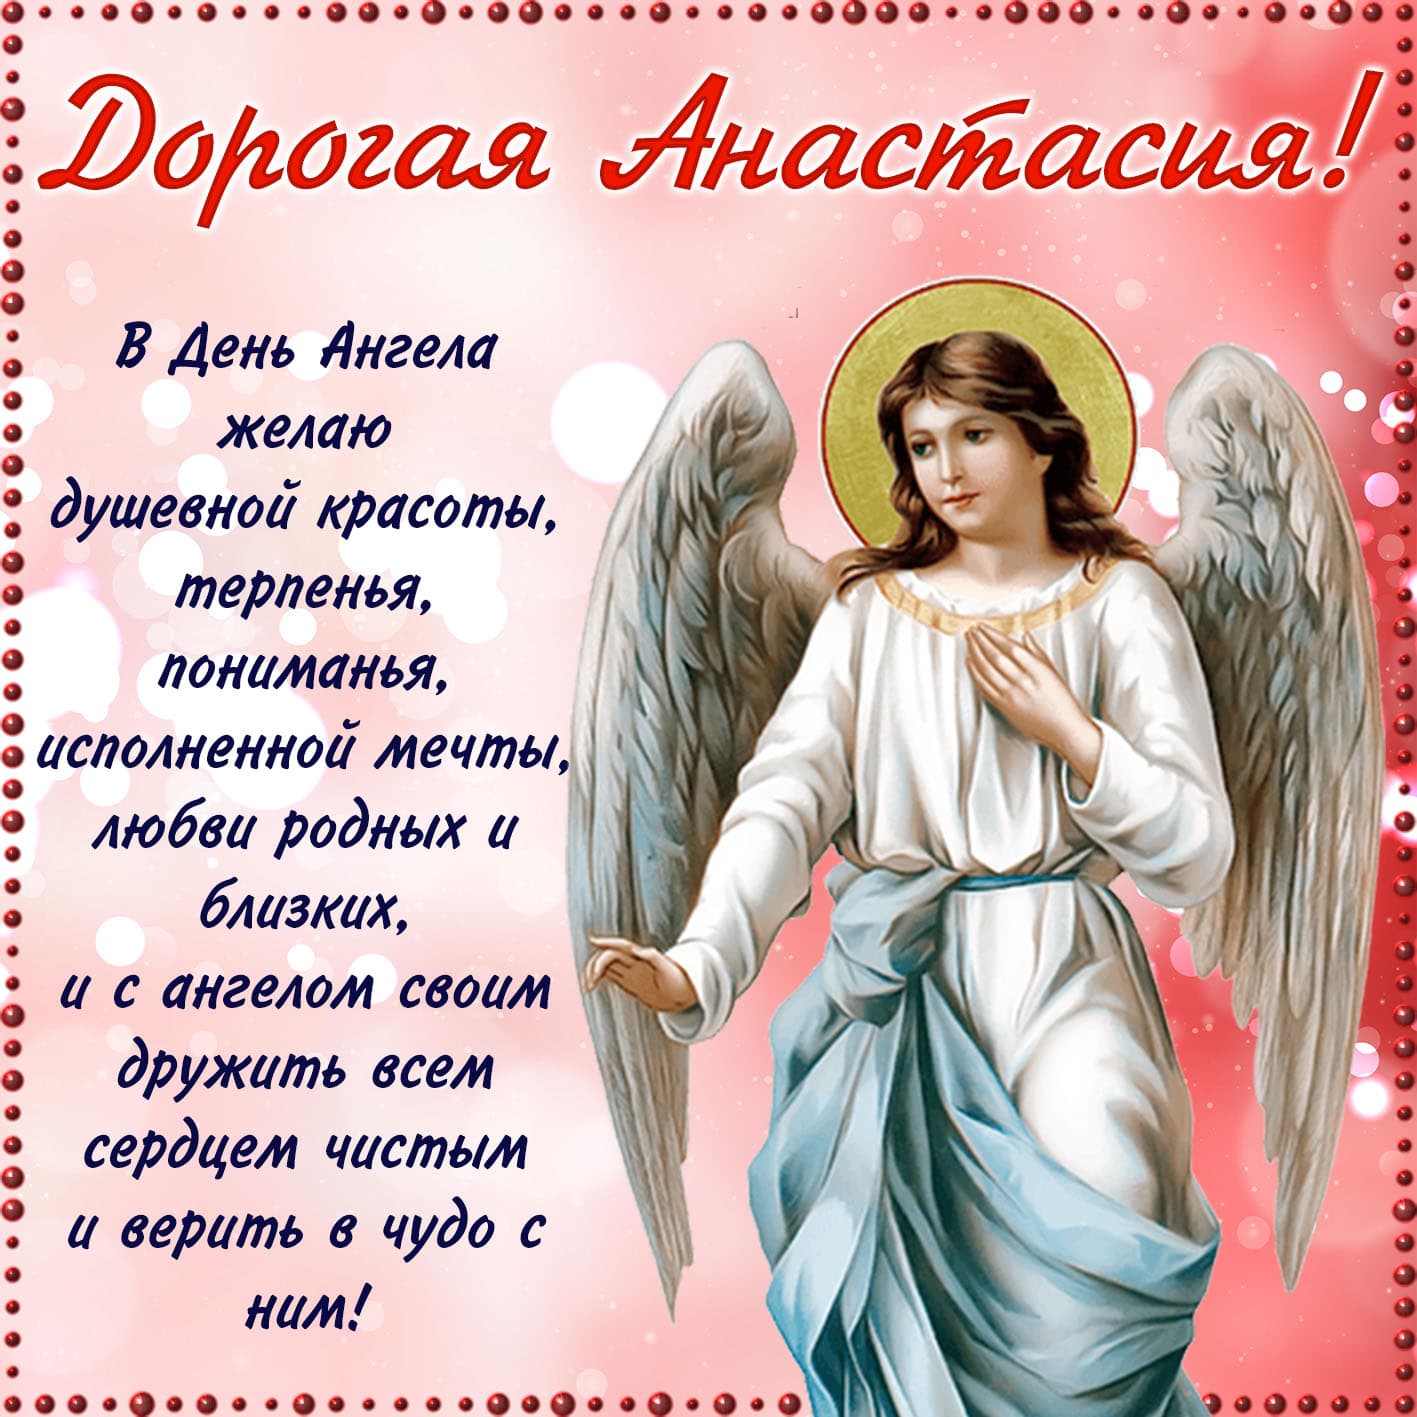 Православная открытка дорогой анастасии в день ангела